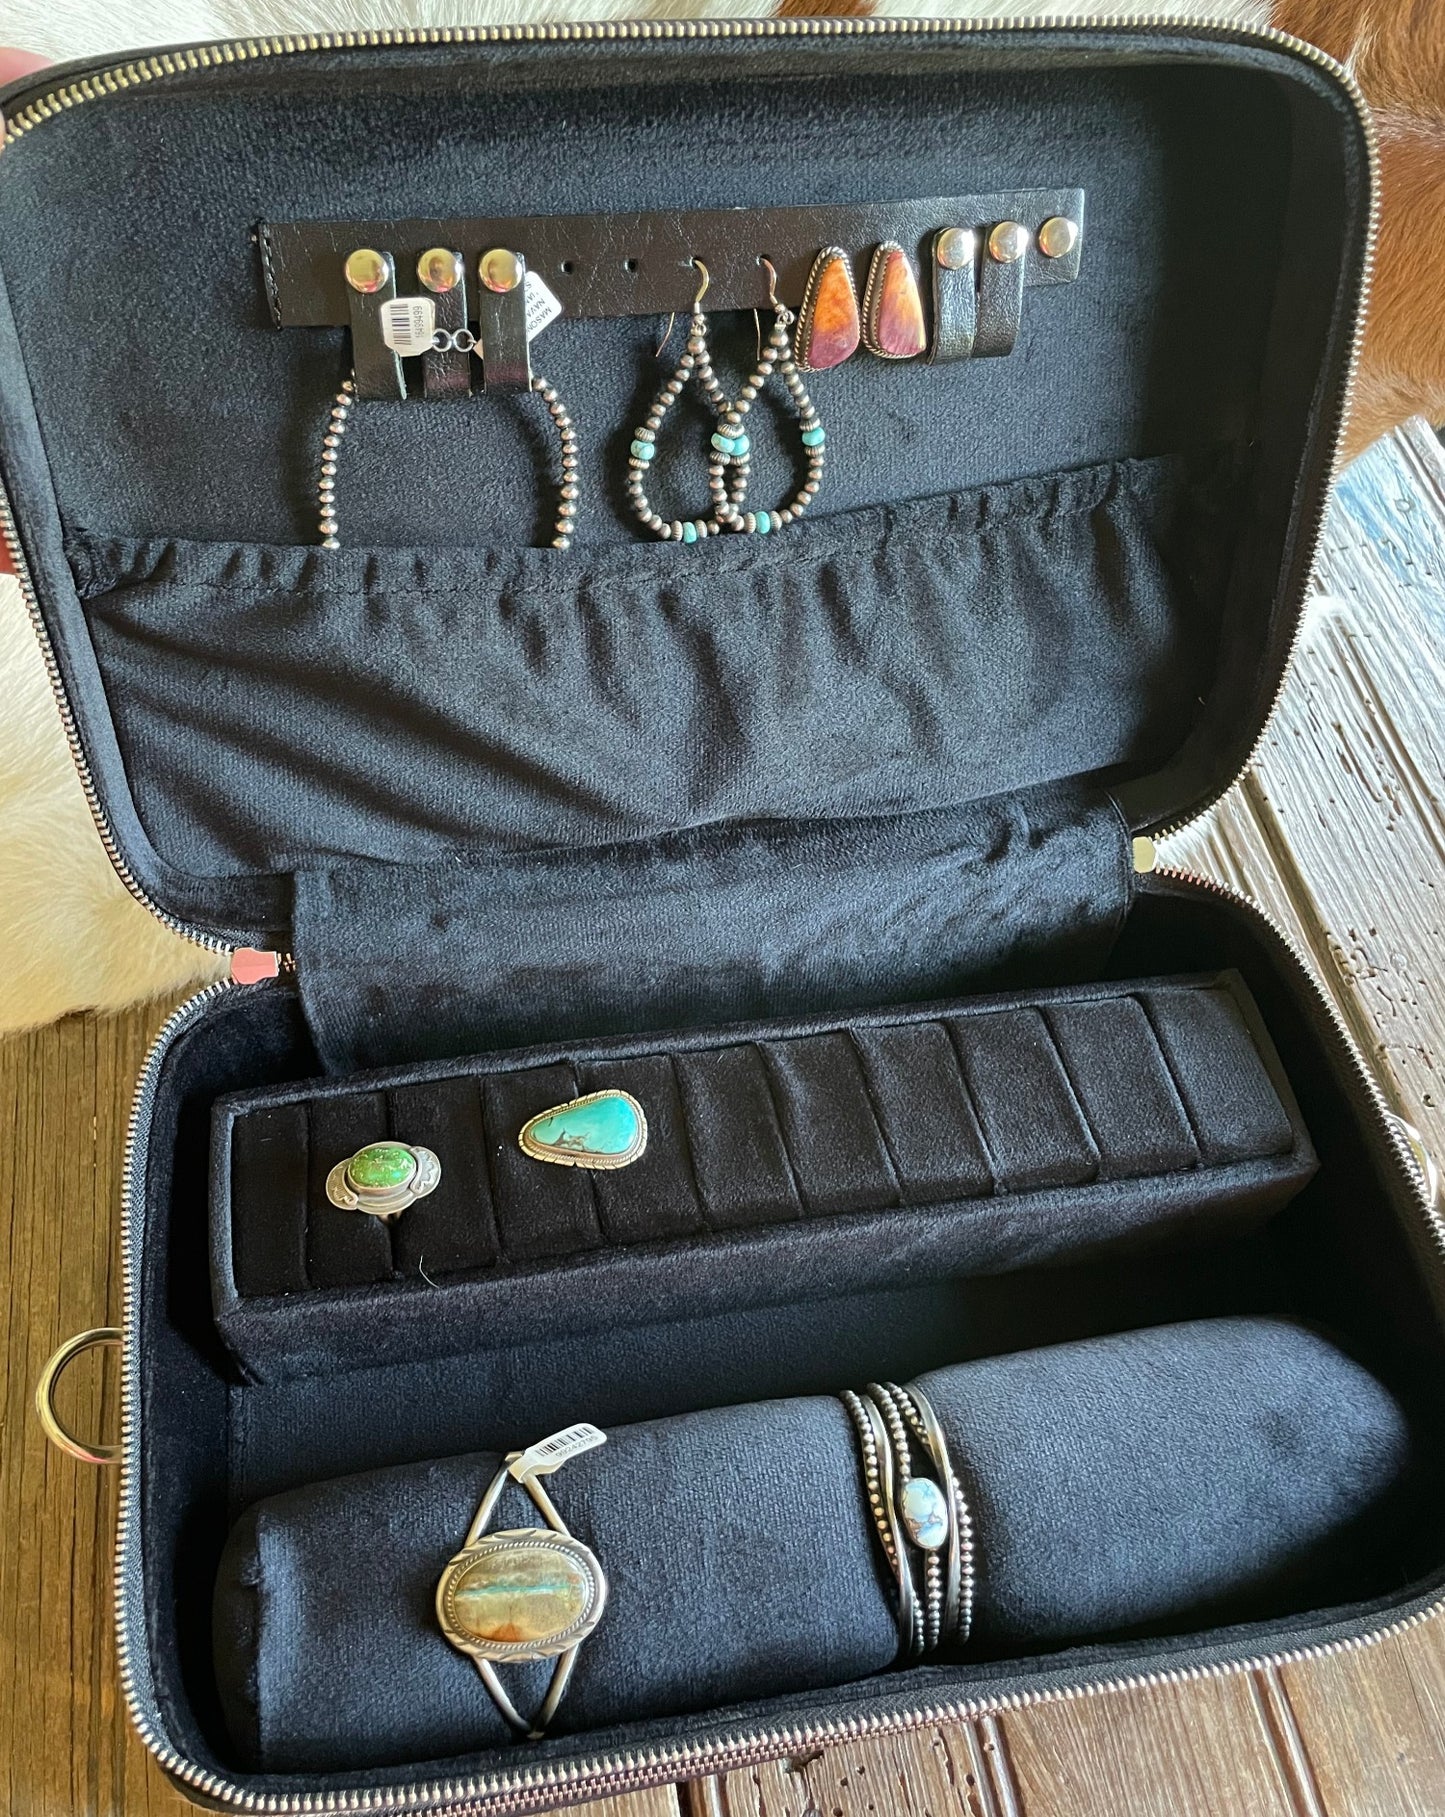 Double Decker Jewelry Case